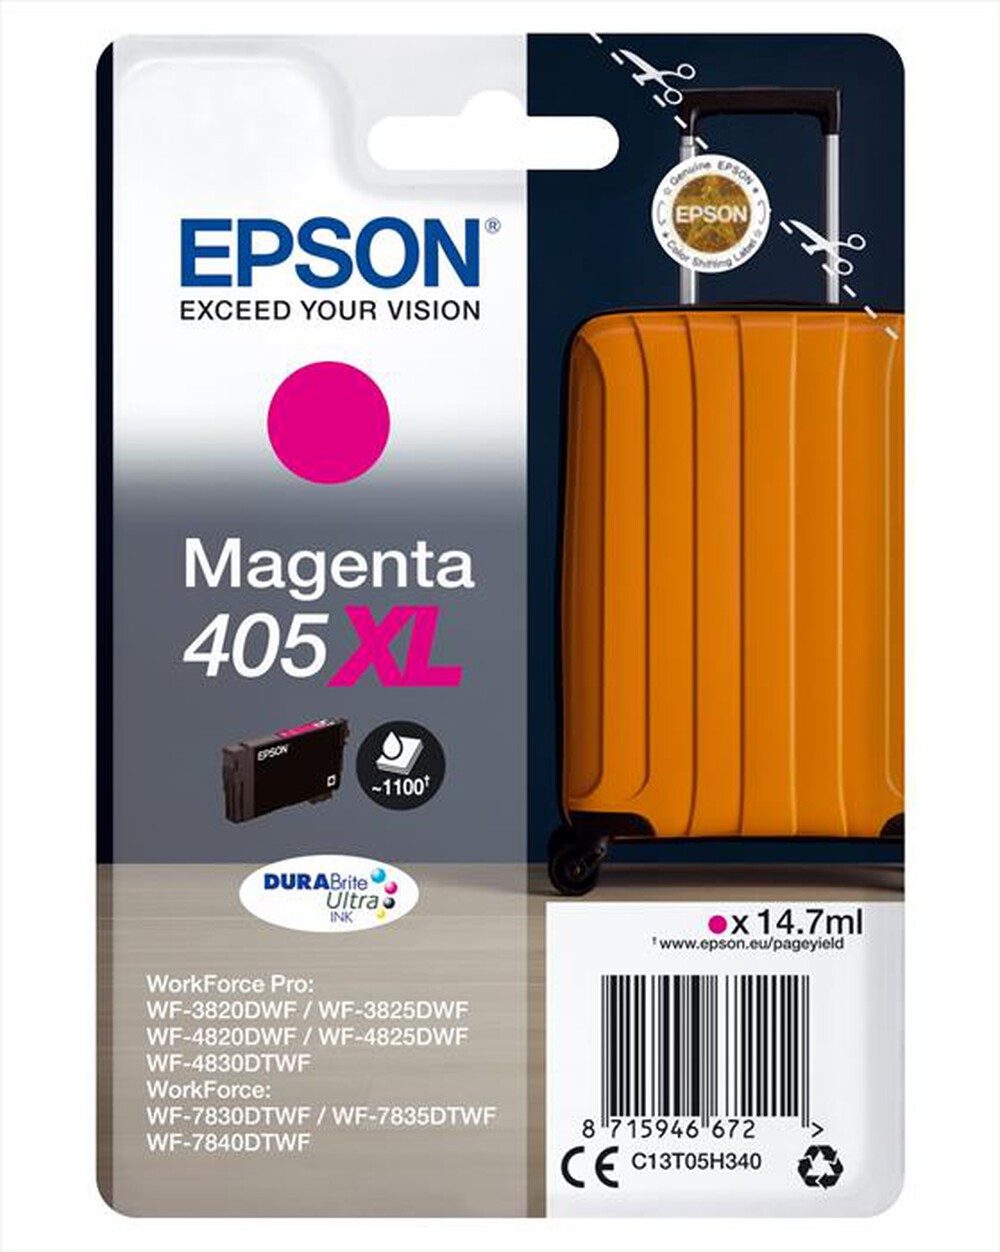 "EPSON - EPSON INCHIOSTRO  SERIE VALIGIA 405XL MAGENTA-Magenta XL"